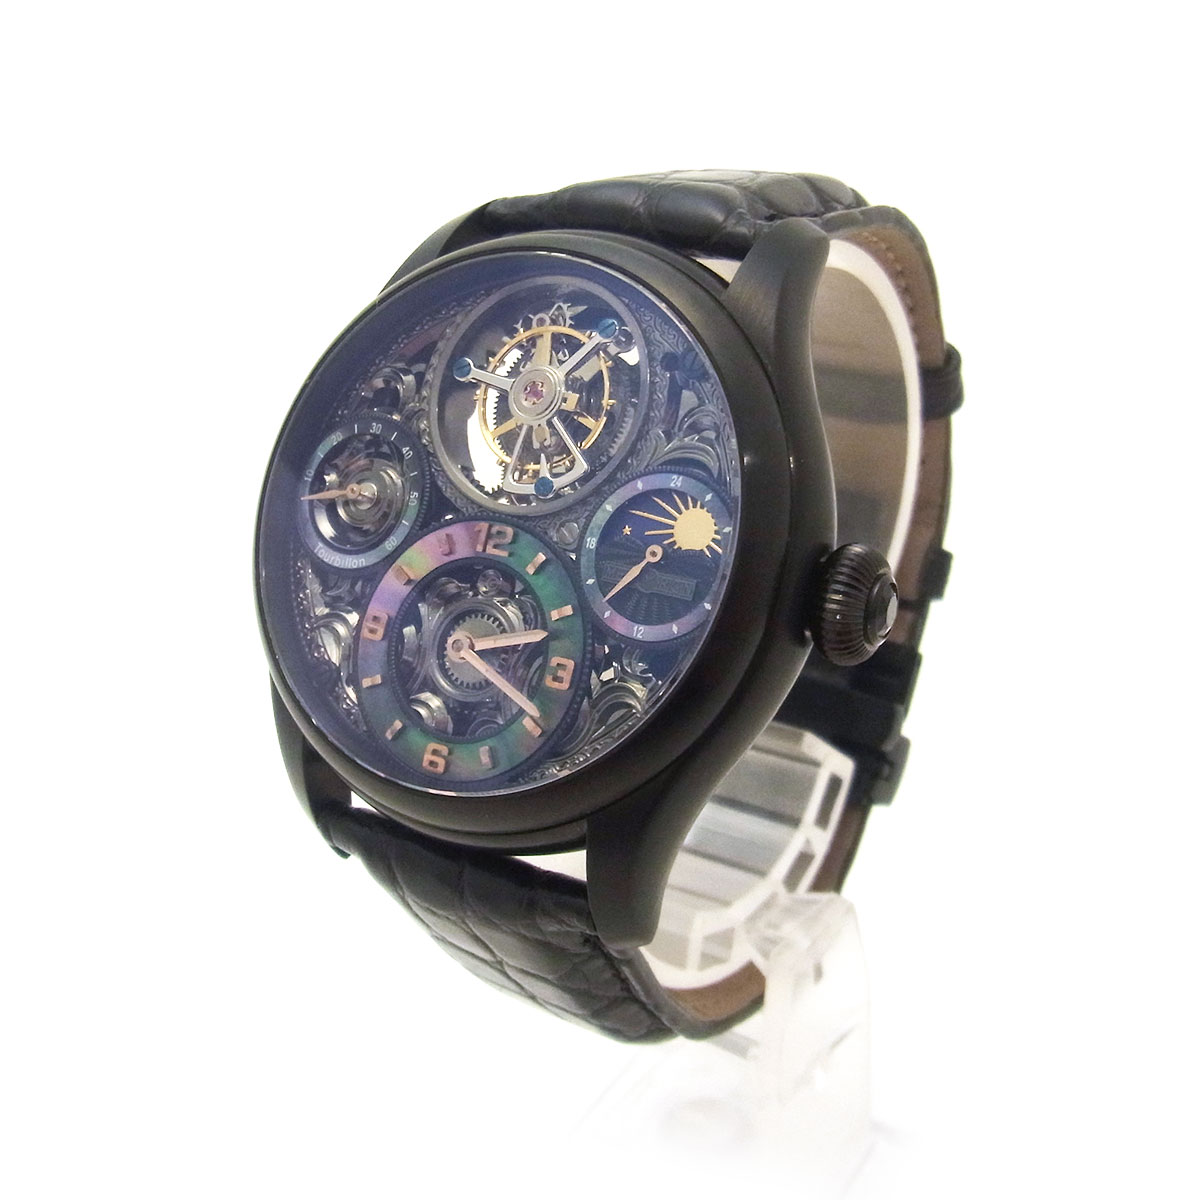 メモリジン(MEMORIGIN) スターリットレジェンド トゥールビヨン MO1231 メンズ腕時計 黒文字盤 ブラック